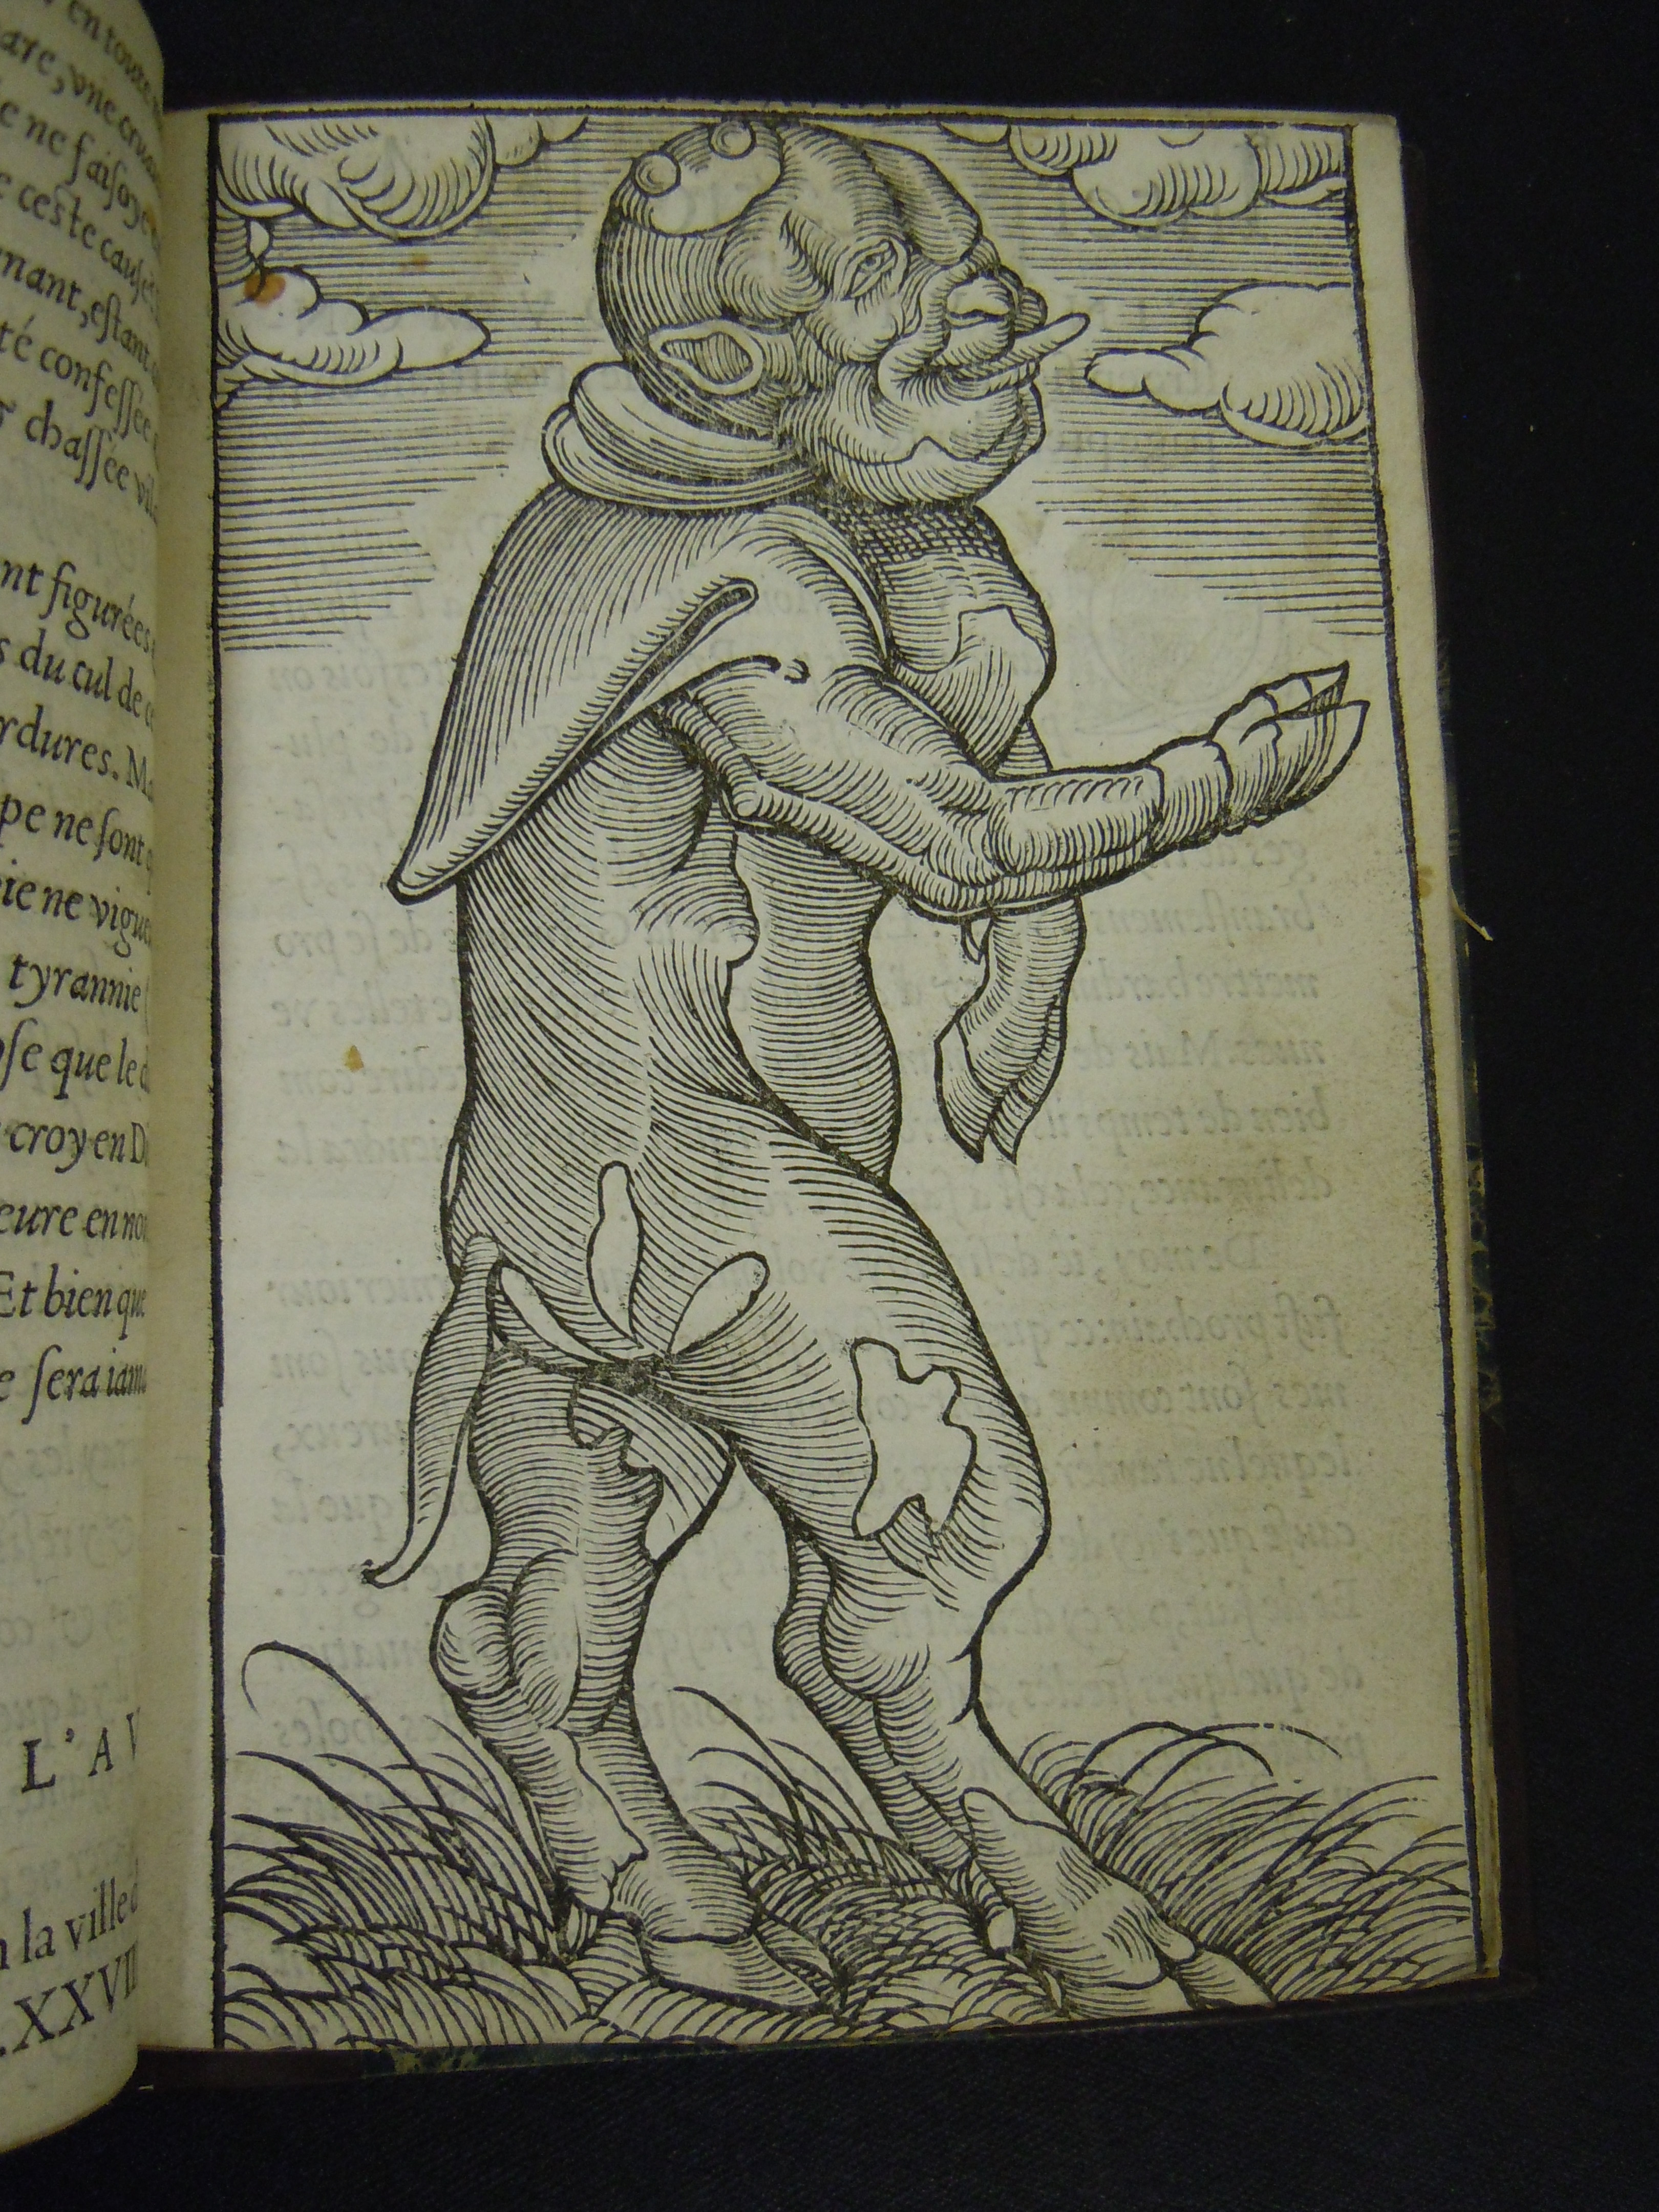 BT1.17.6(1), p.29, Martin Luther’s De deux monstres prodigieux (1557)